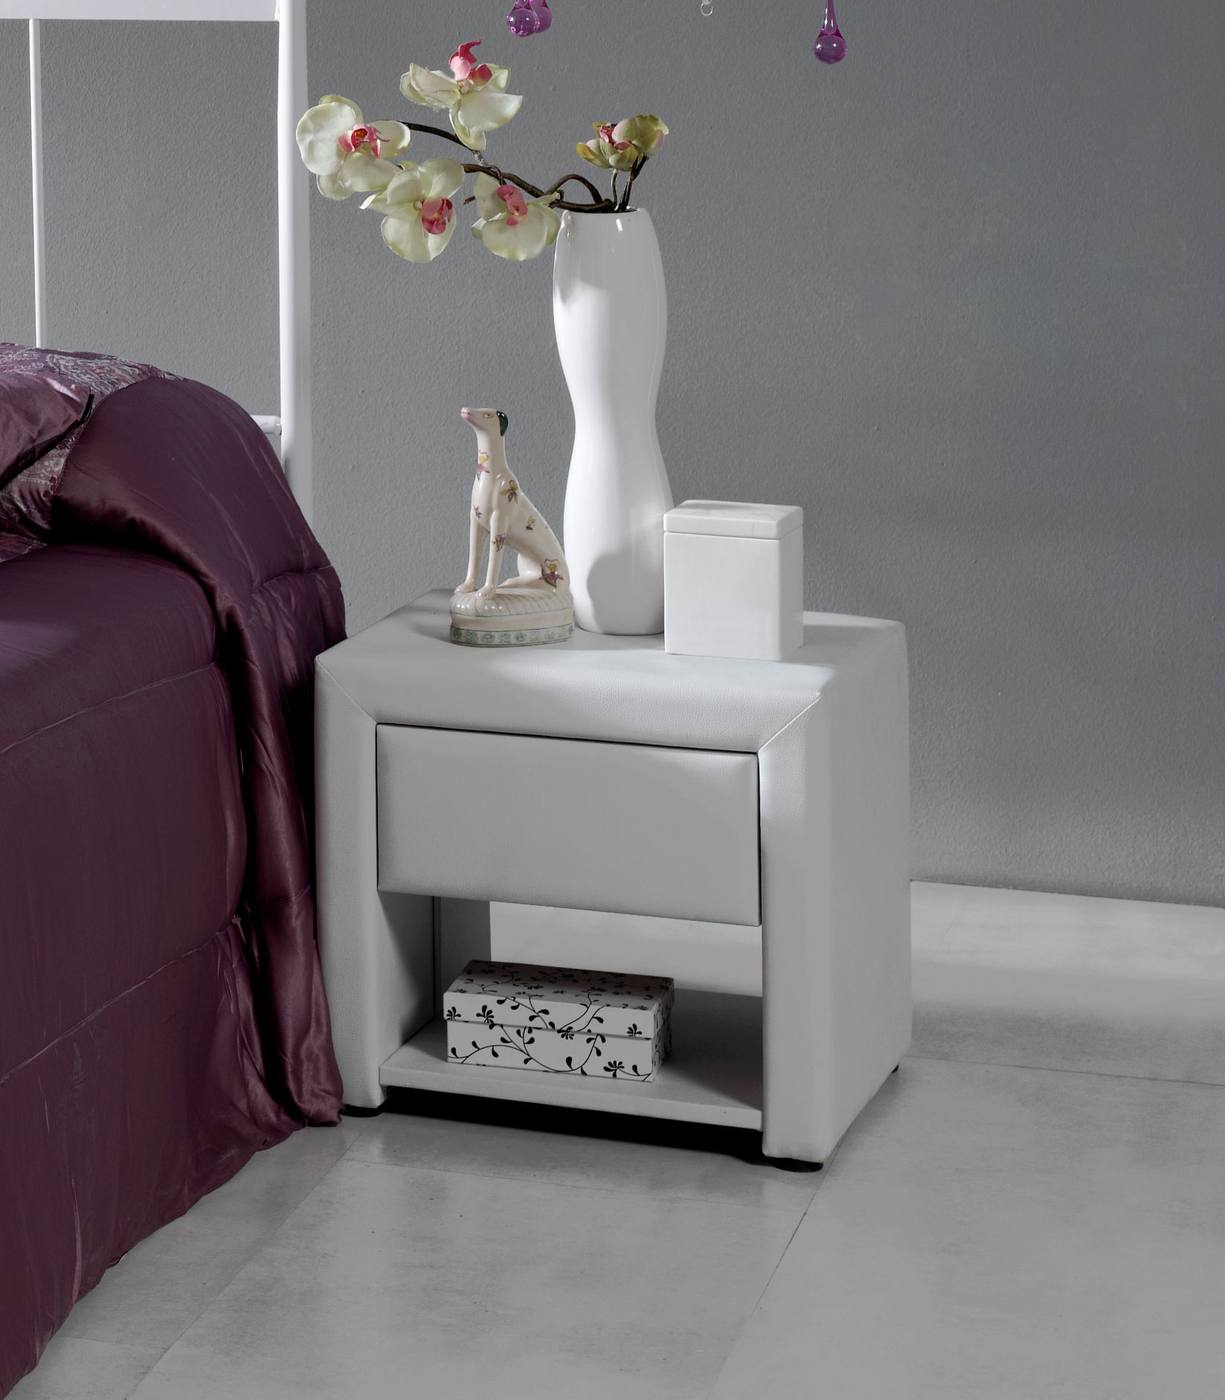 Mesita Tapizada LD M-105 Blanca - Mesita de noche tapizada en polipiel color blanco, con un cajón + un hueco